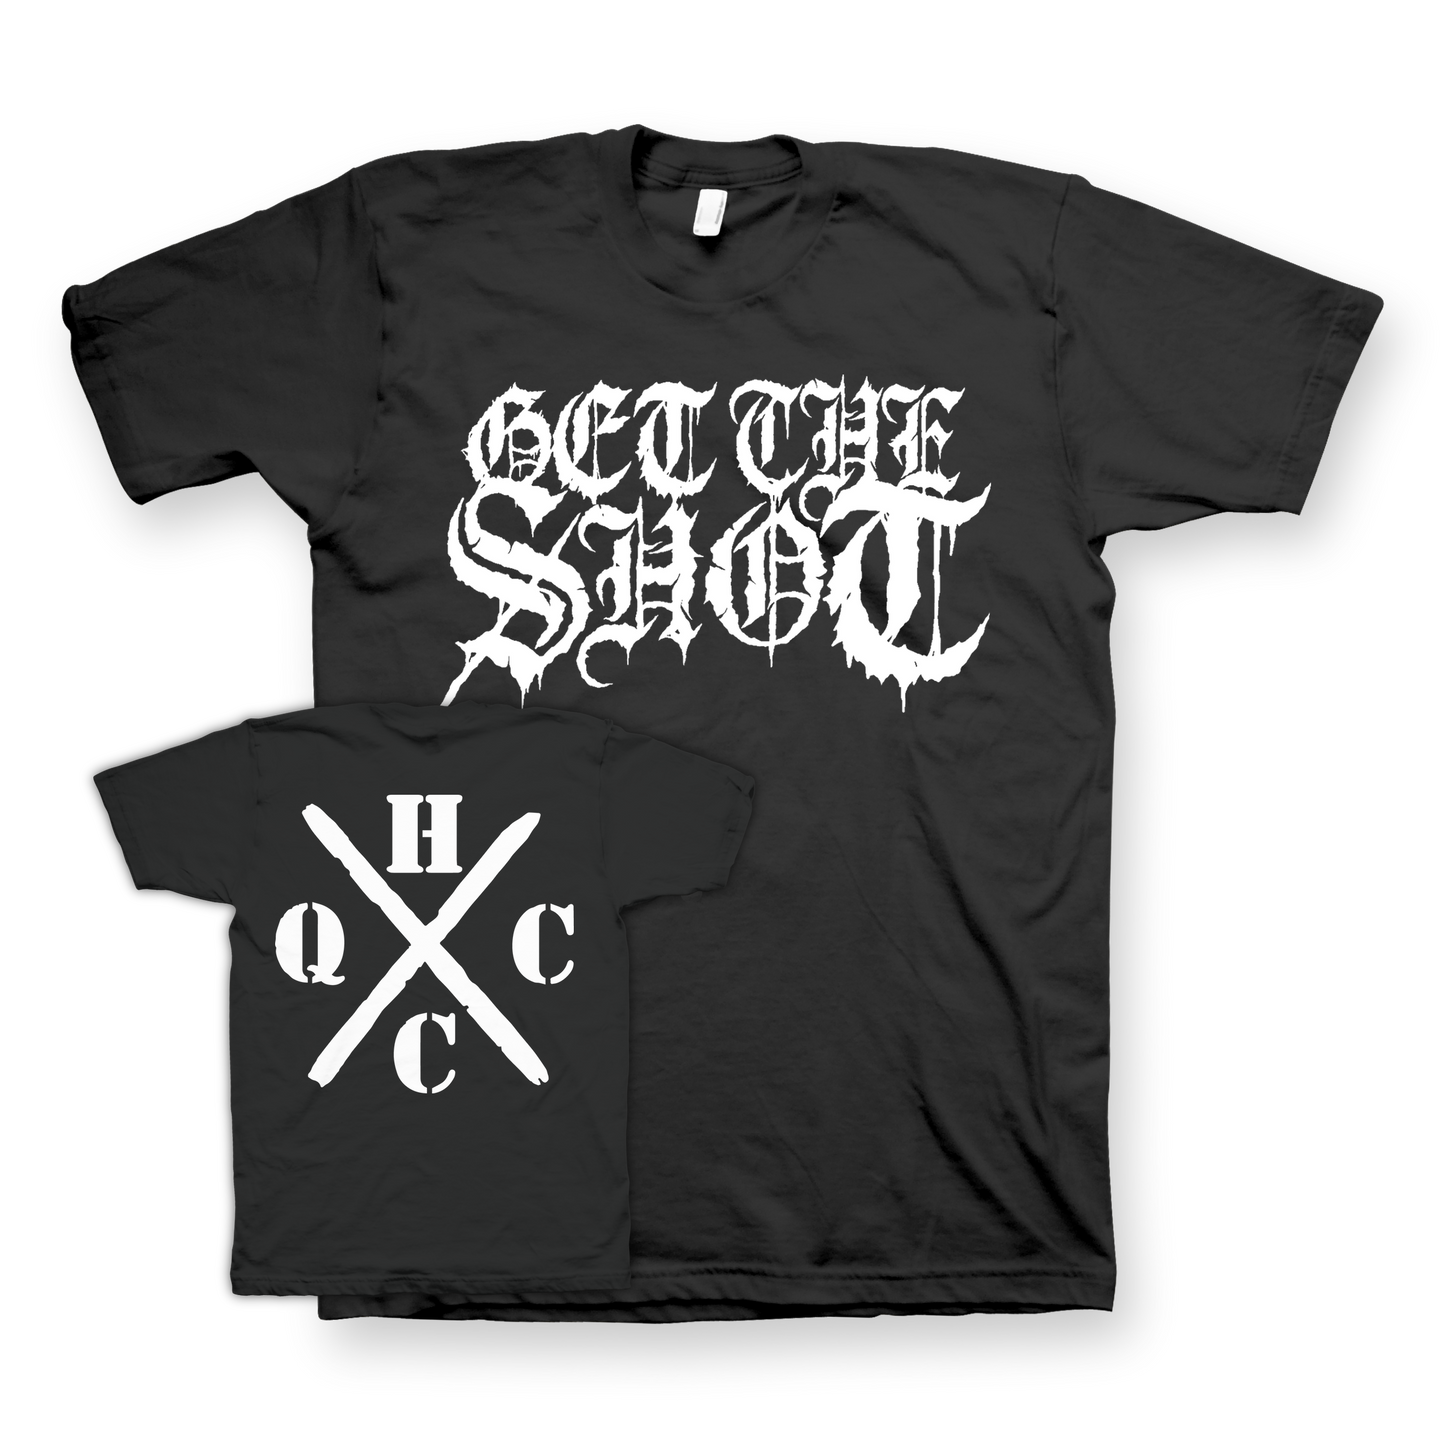 GET THE SHOT "QCHC" Black T-Shirt